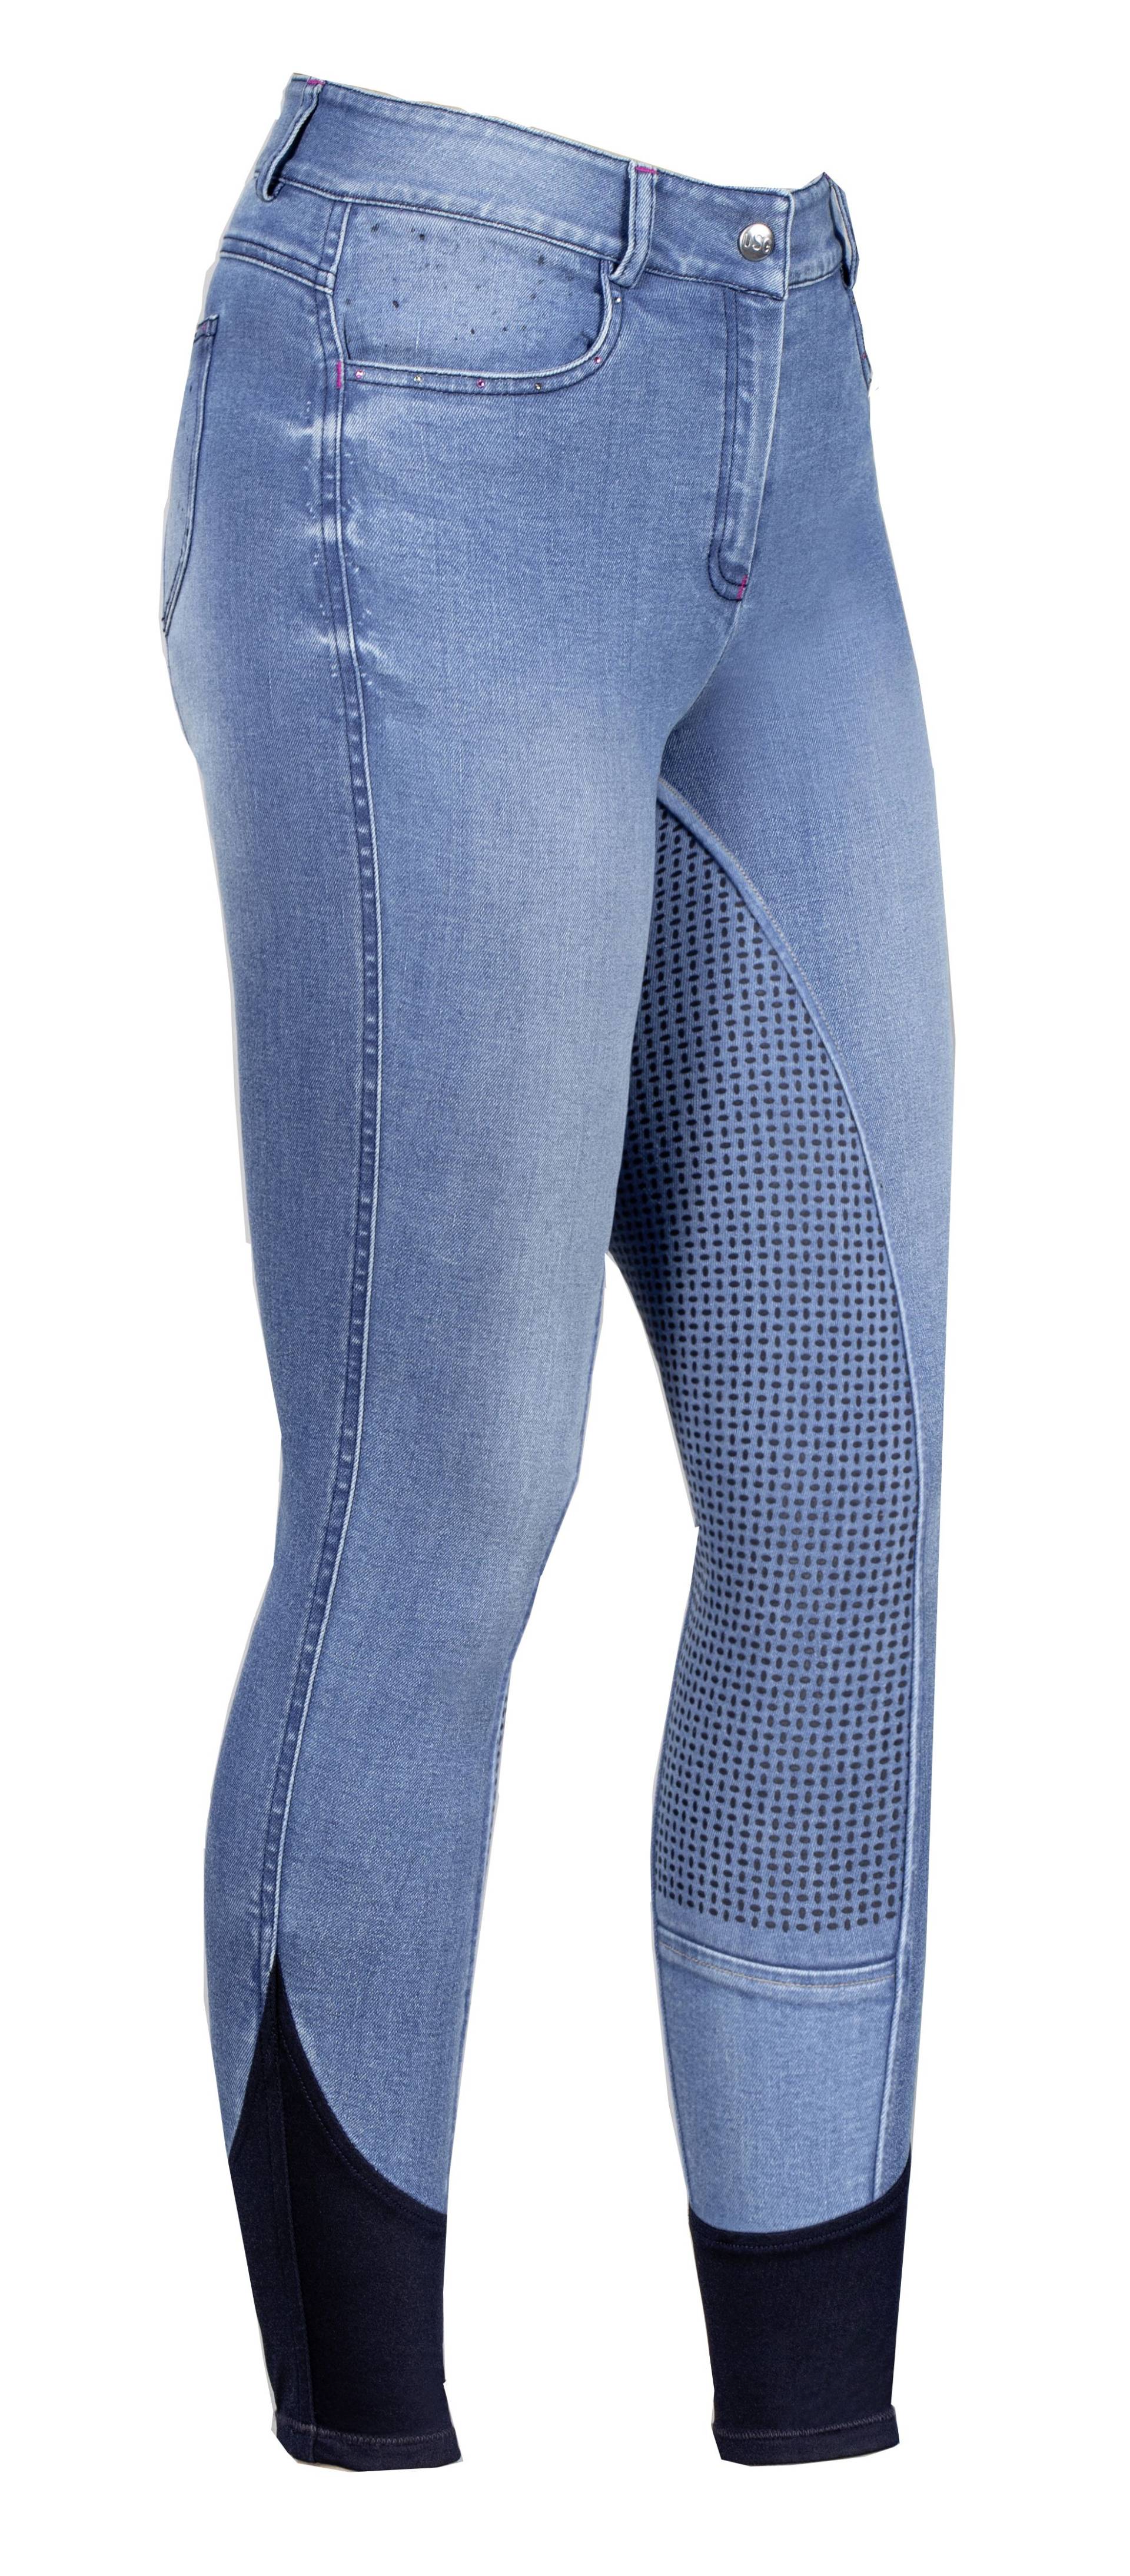 Kinder Jeansreithose Kimberly mit Top-Grip Vollbesatz von USG